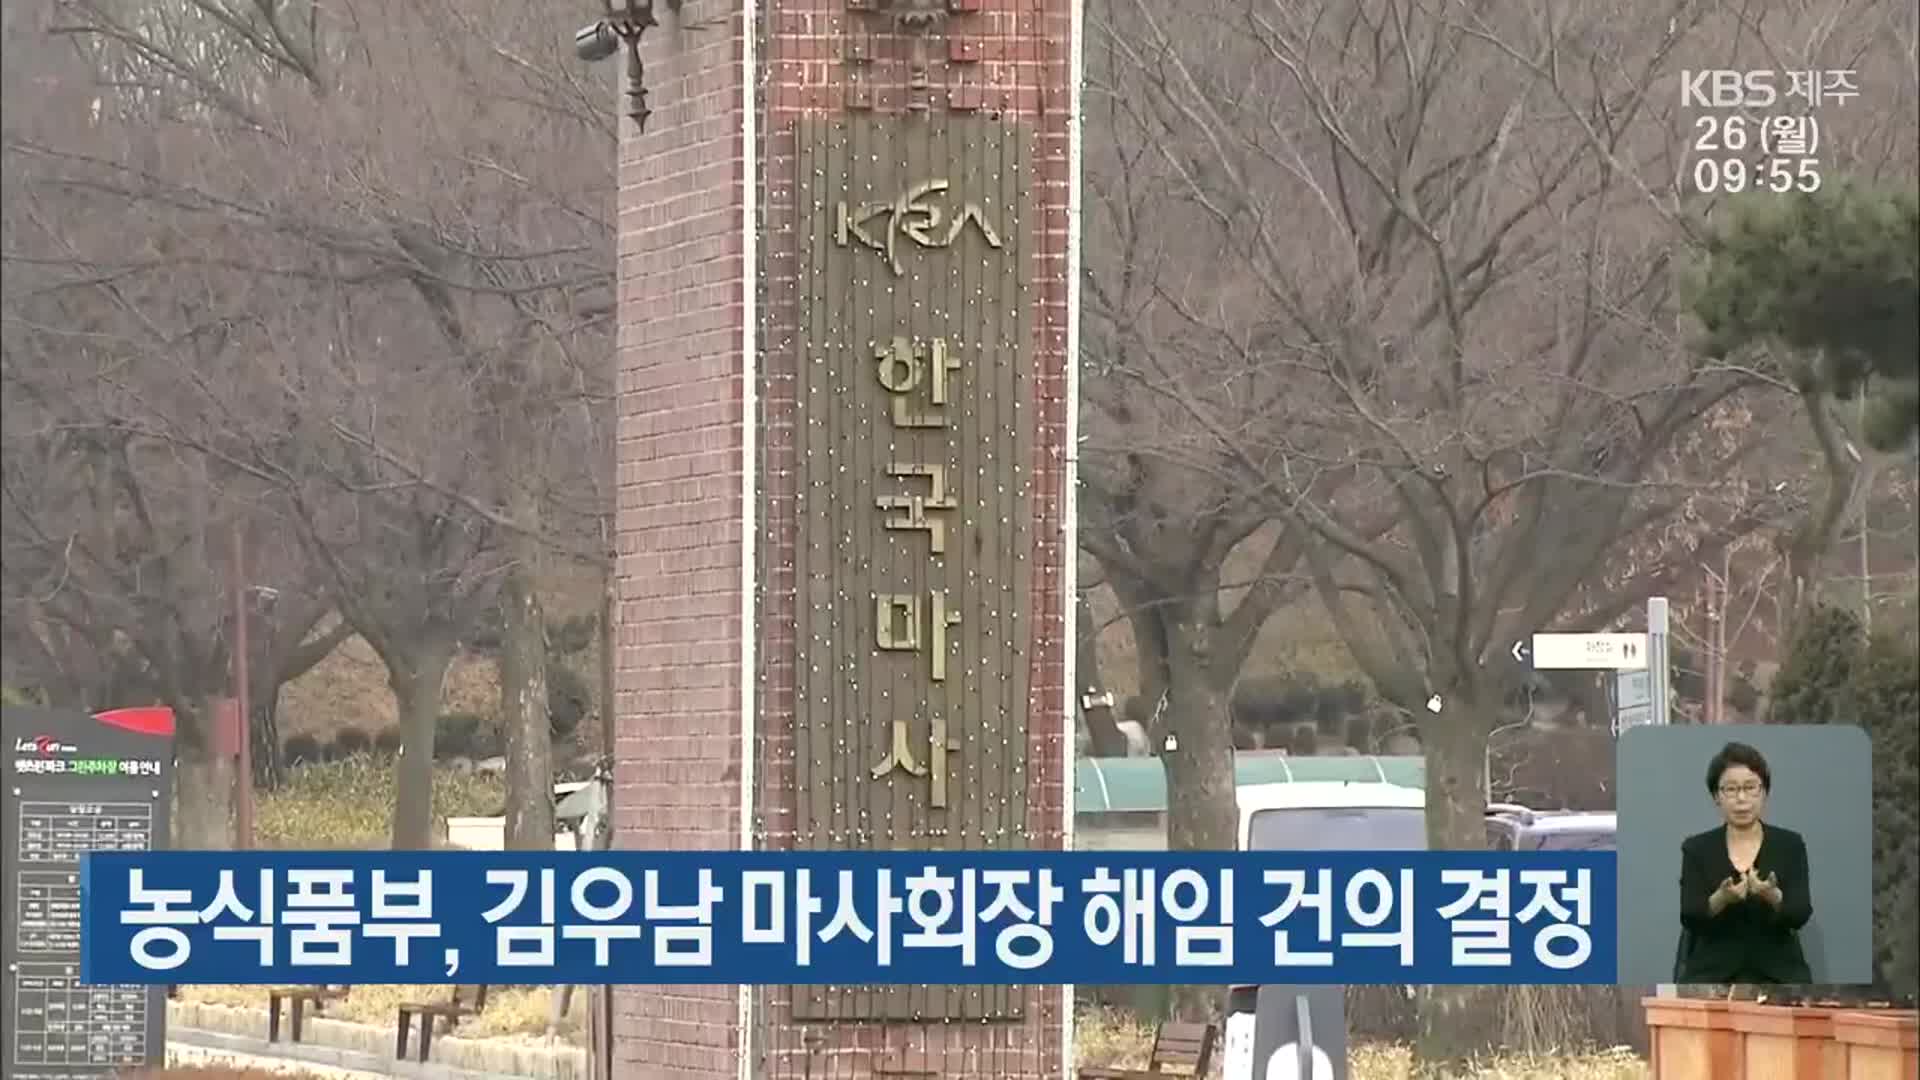 농식품부, 김우남 마사회장 해임 건의 결정